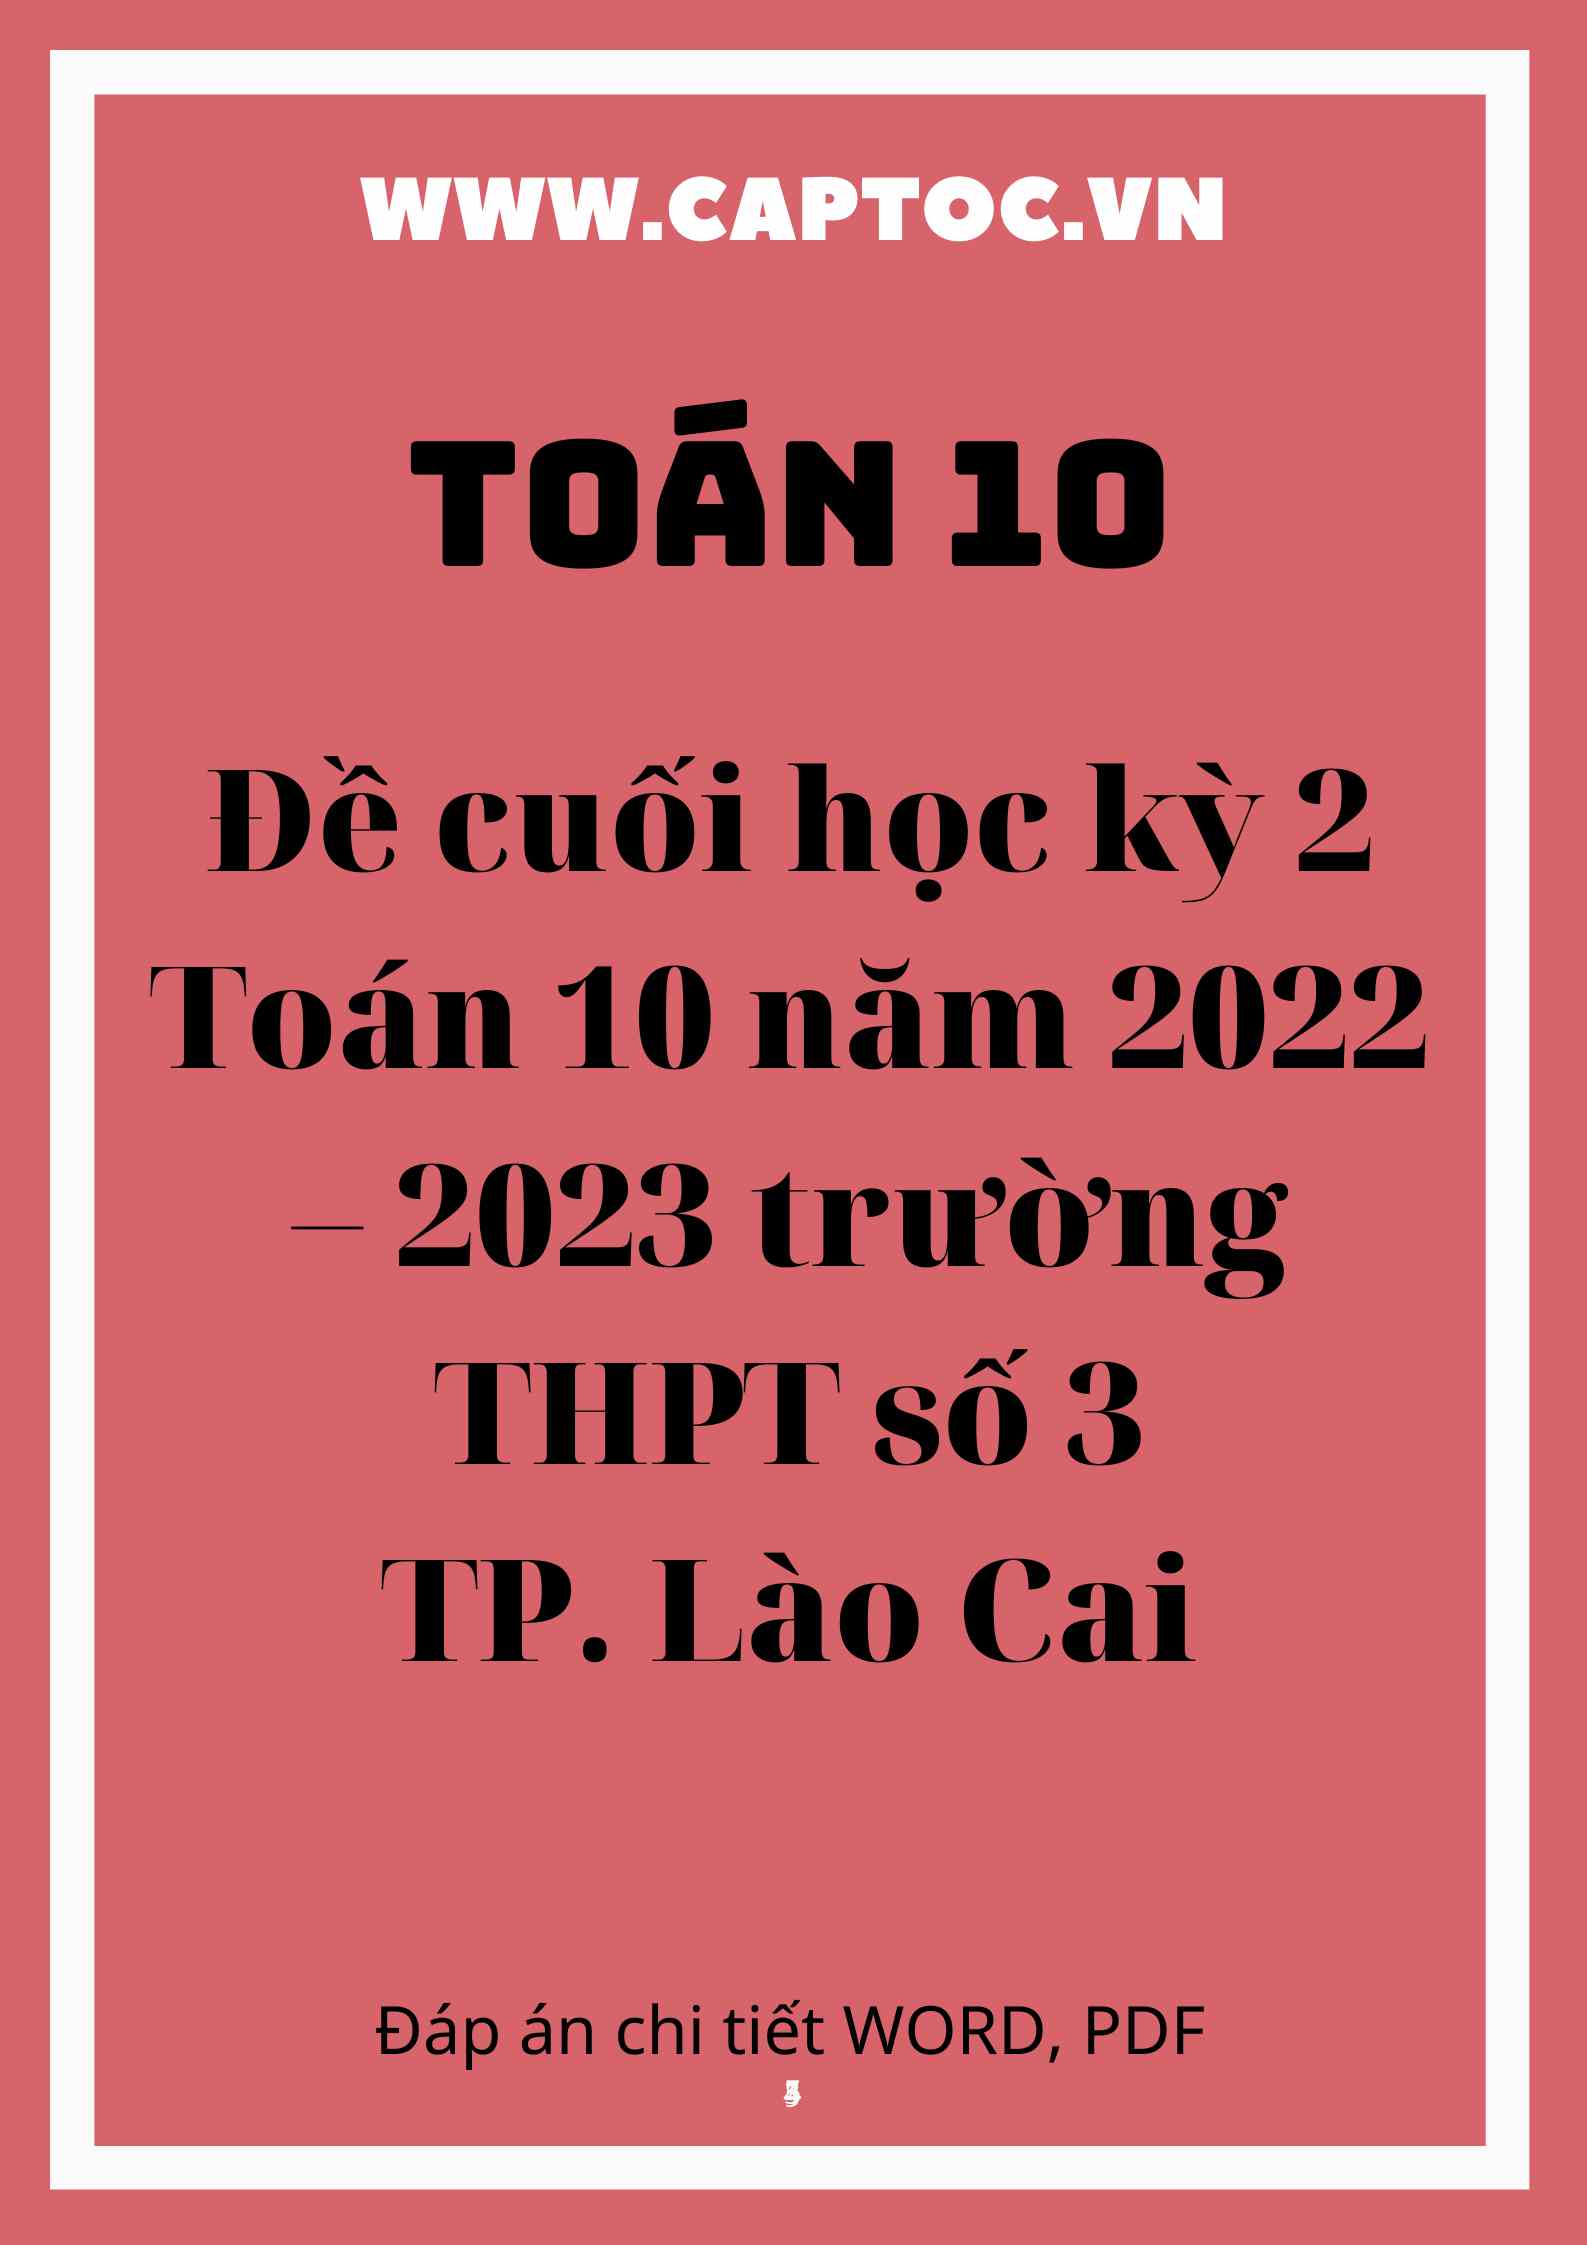 Đề cuối học kỳ 2 Toán 10 năm 2022 – 2023 trường THPT số 3 TP Lào Cai